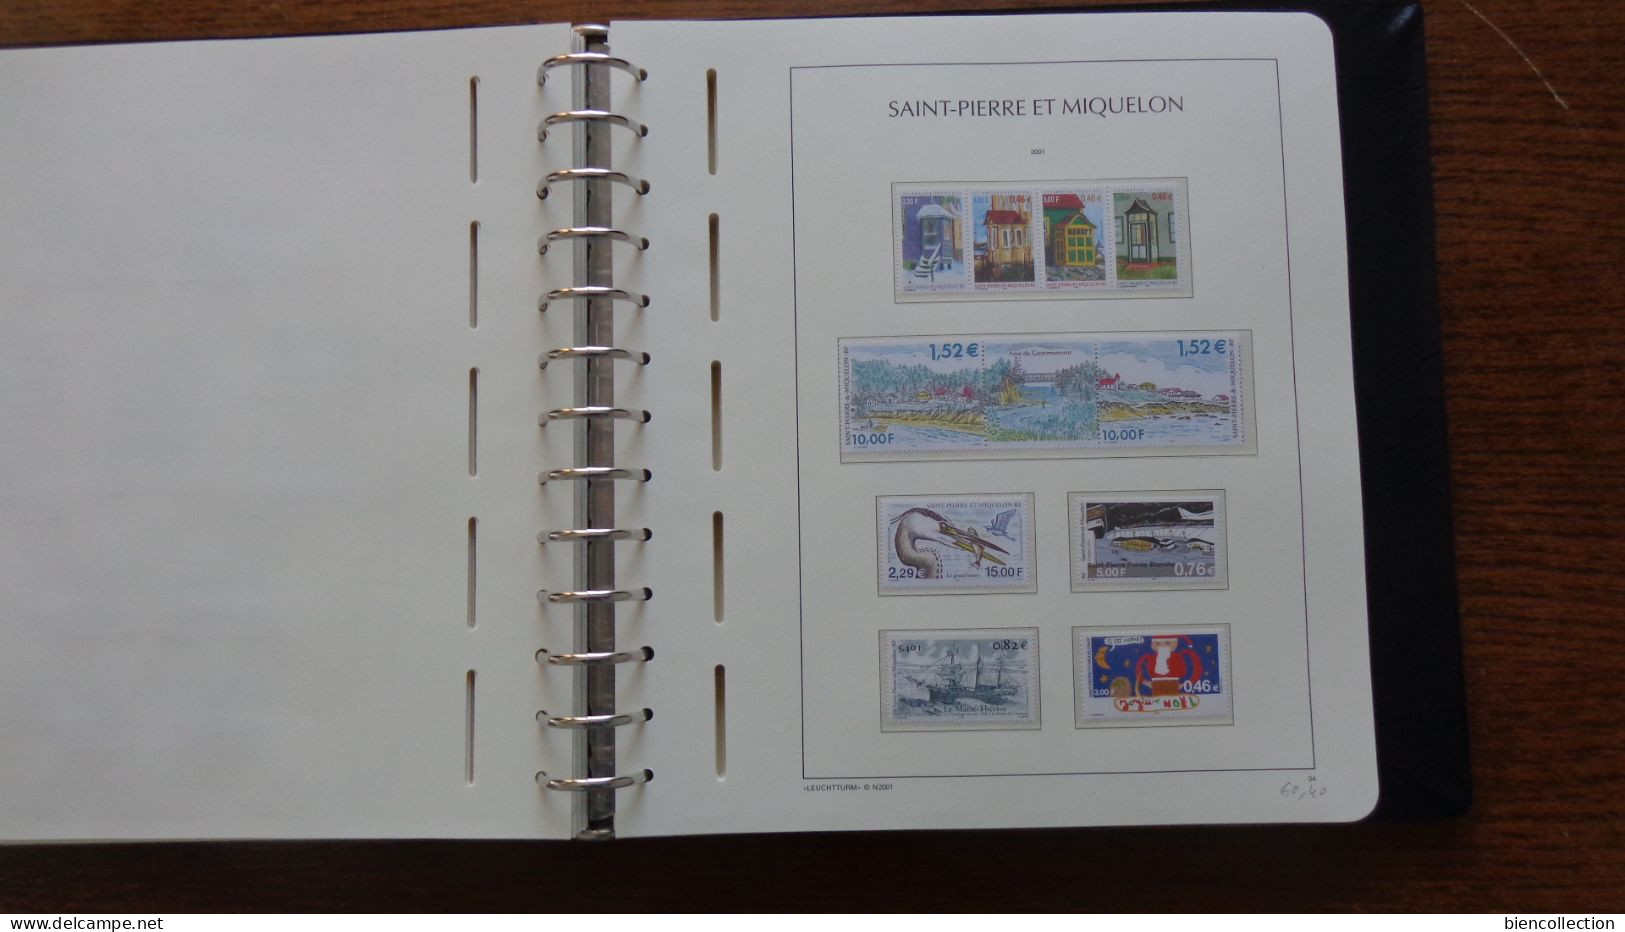 Saint Pierre et Miquelon. Collection** complète de 1986 à 2008 dans un album Leuchturn; faciale 330€